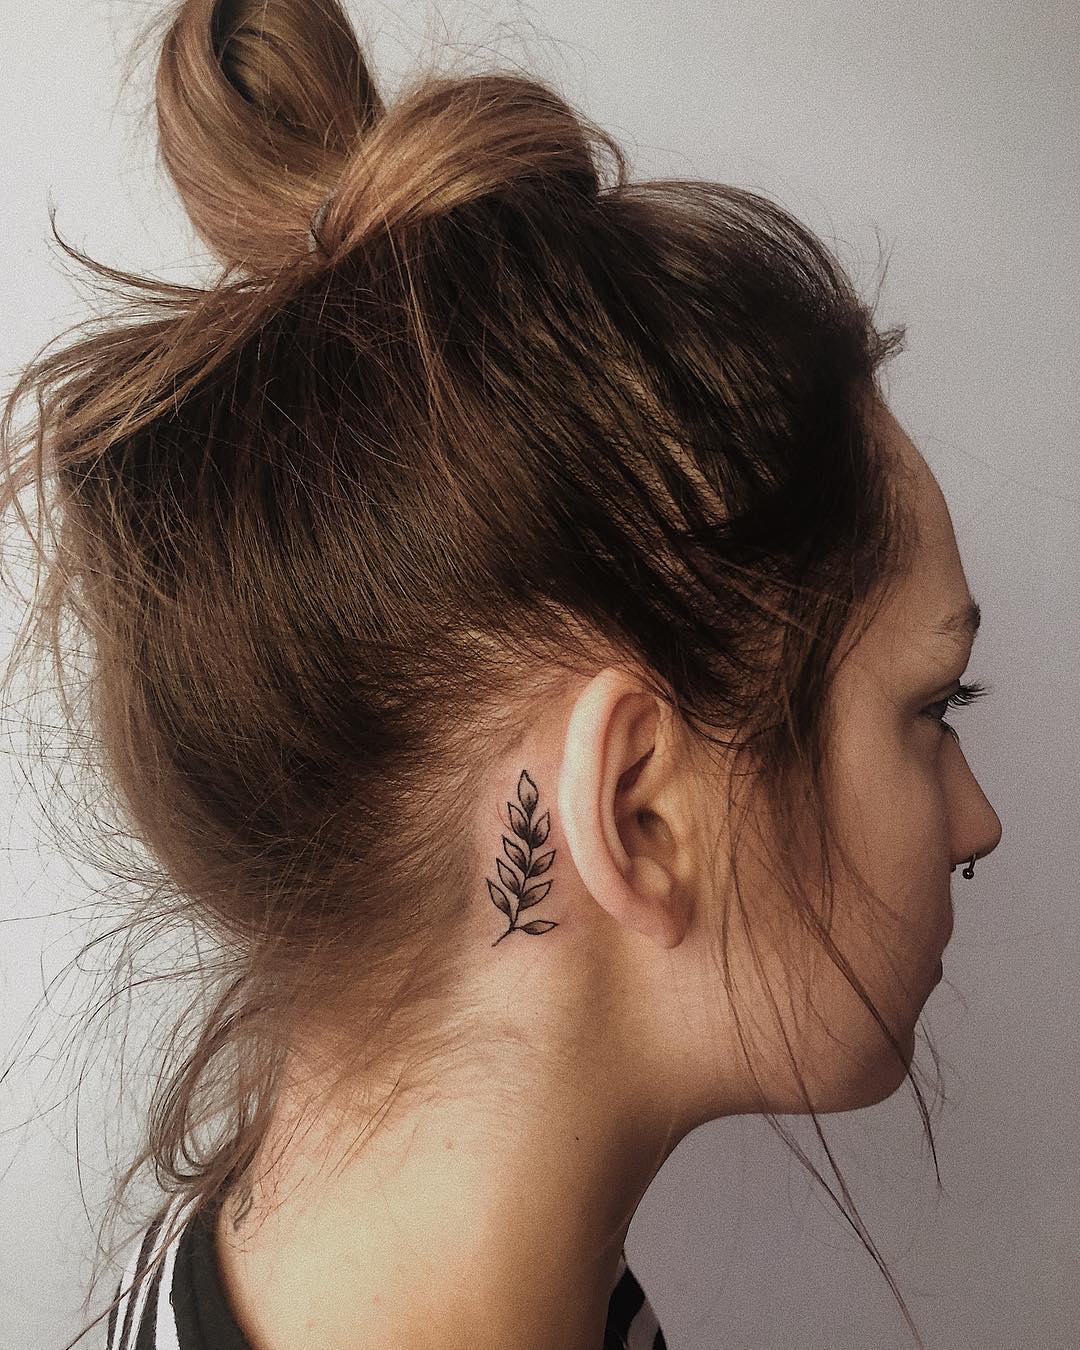 Tatuaje de hoja detrás de la oreja